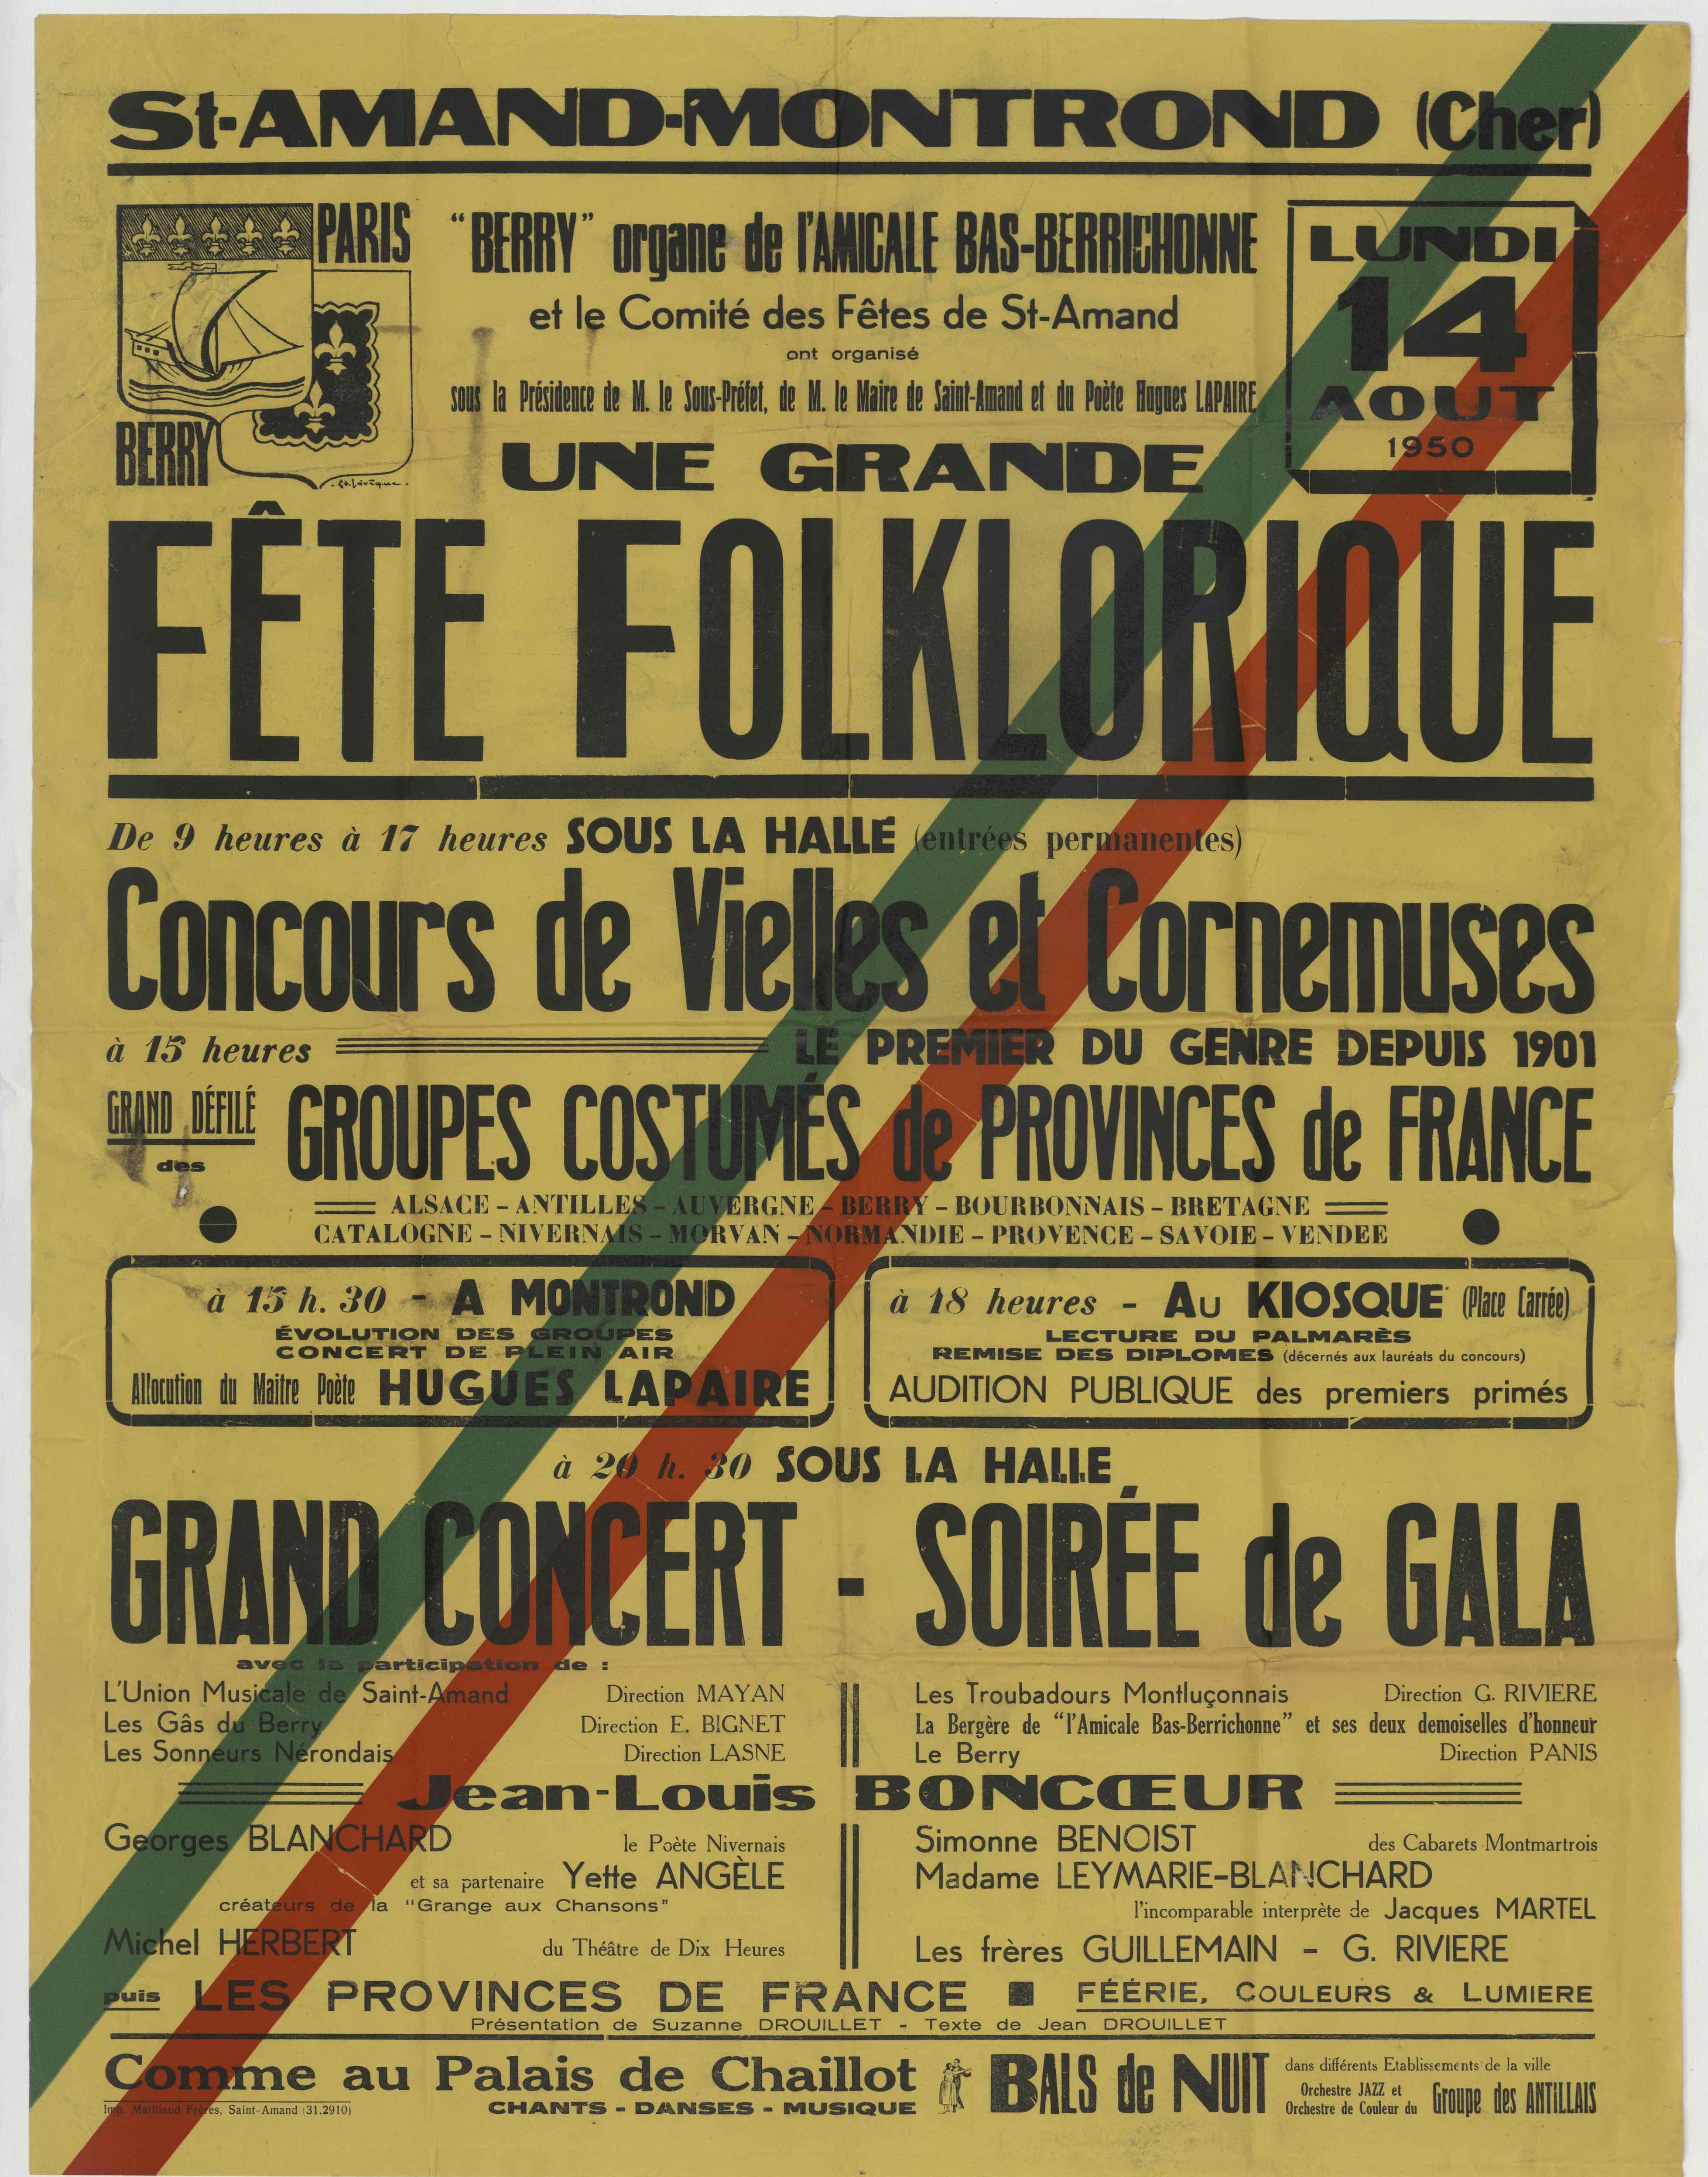 Affiche du concours de vielles et cornemuses de Saint-Amand-Montrond (Cher), 14 août 1950 (Archives nationales, 20130043/47, scan FRAN_0011_050843_L.jpg)